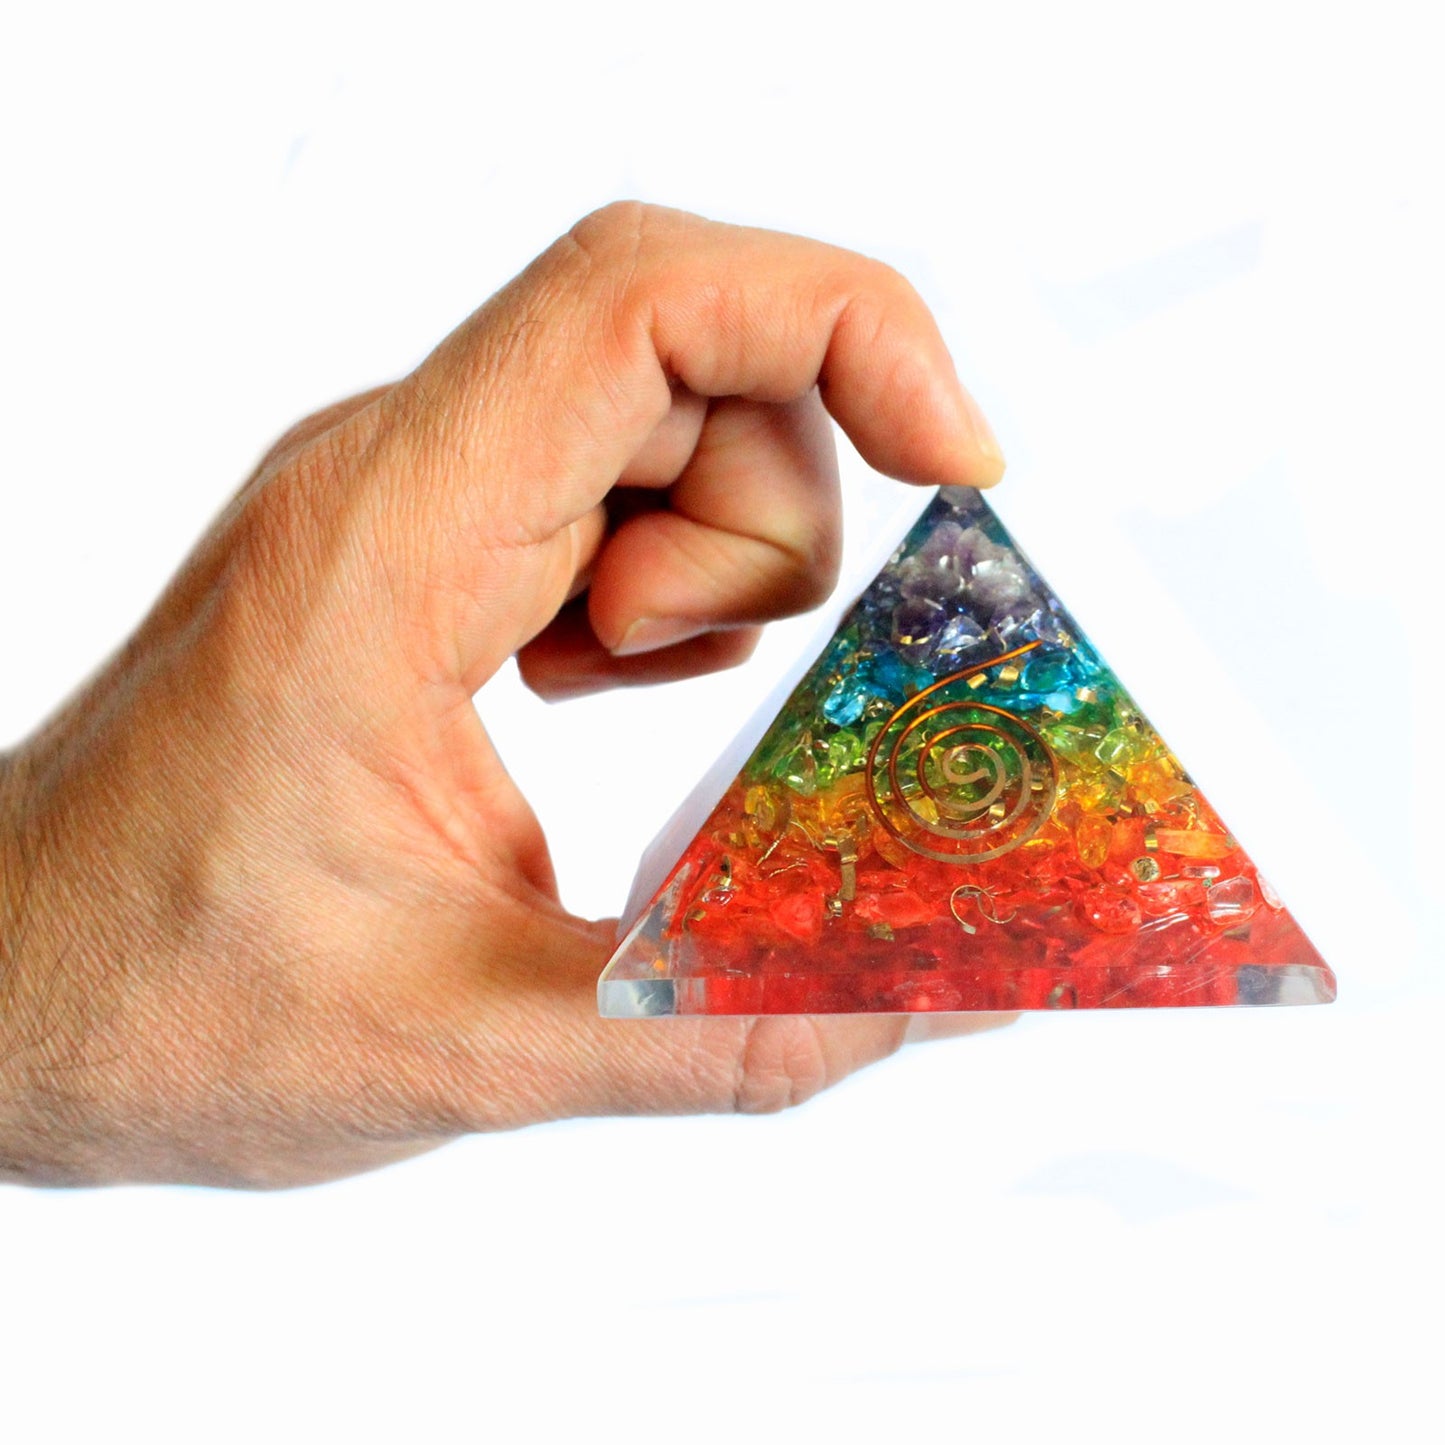 Lrg Orgonite Pyramid 70mm - Chakra Gemchips